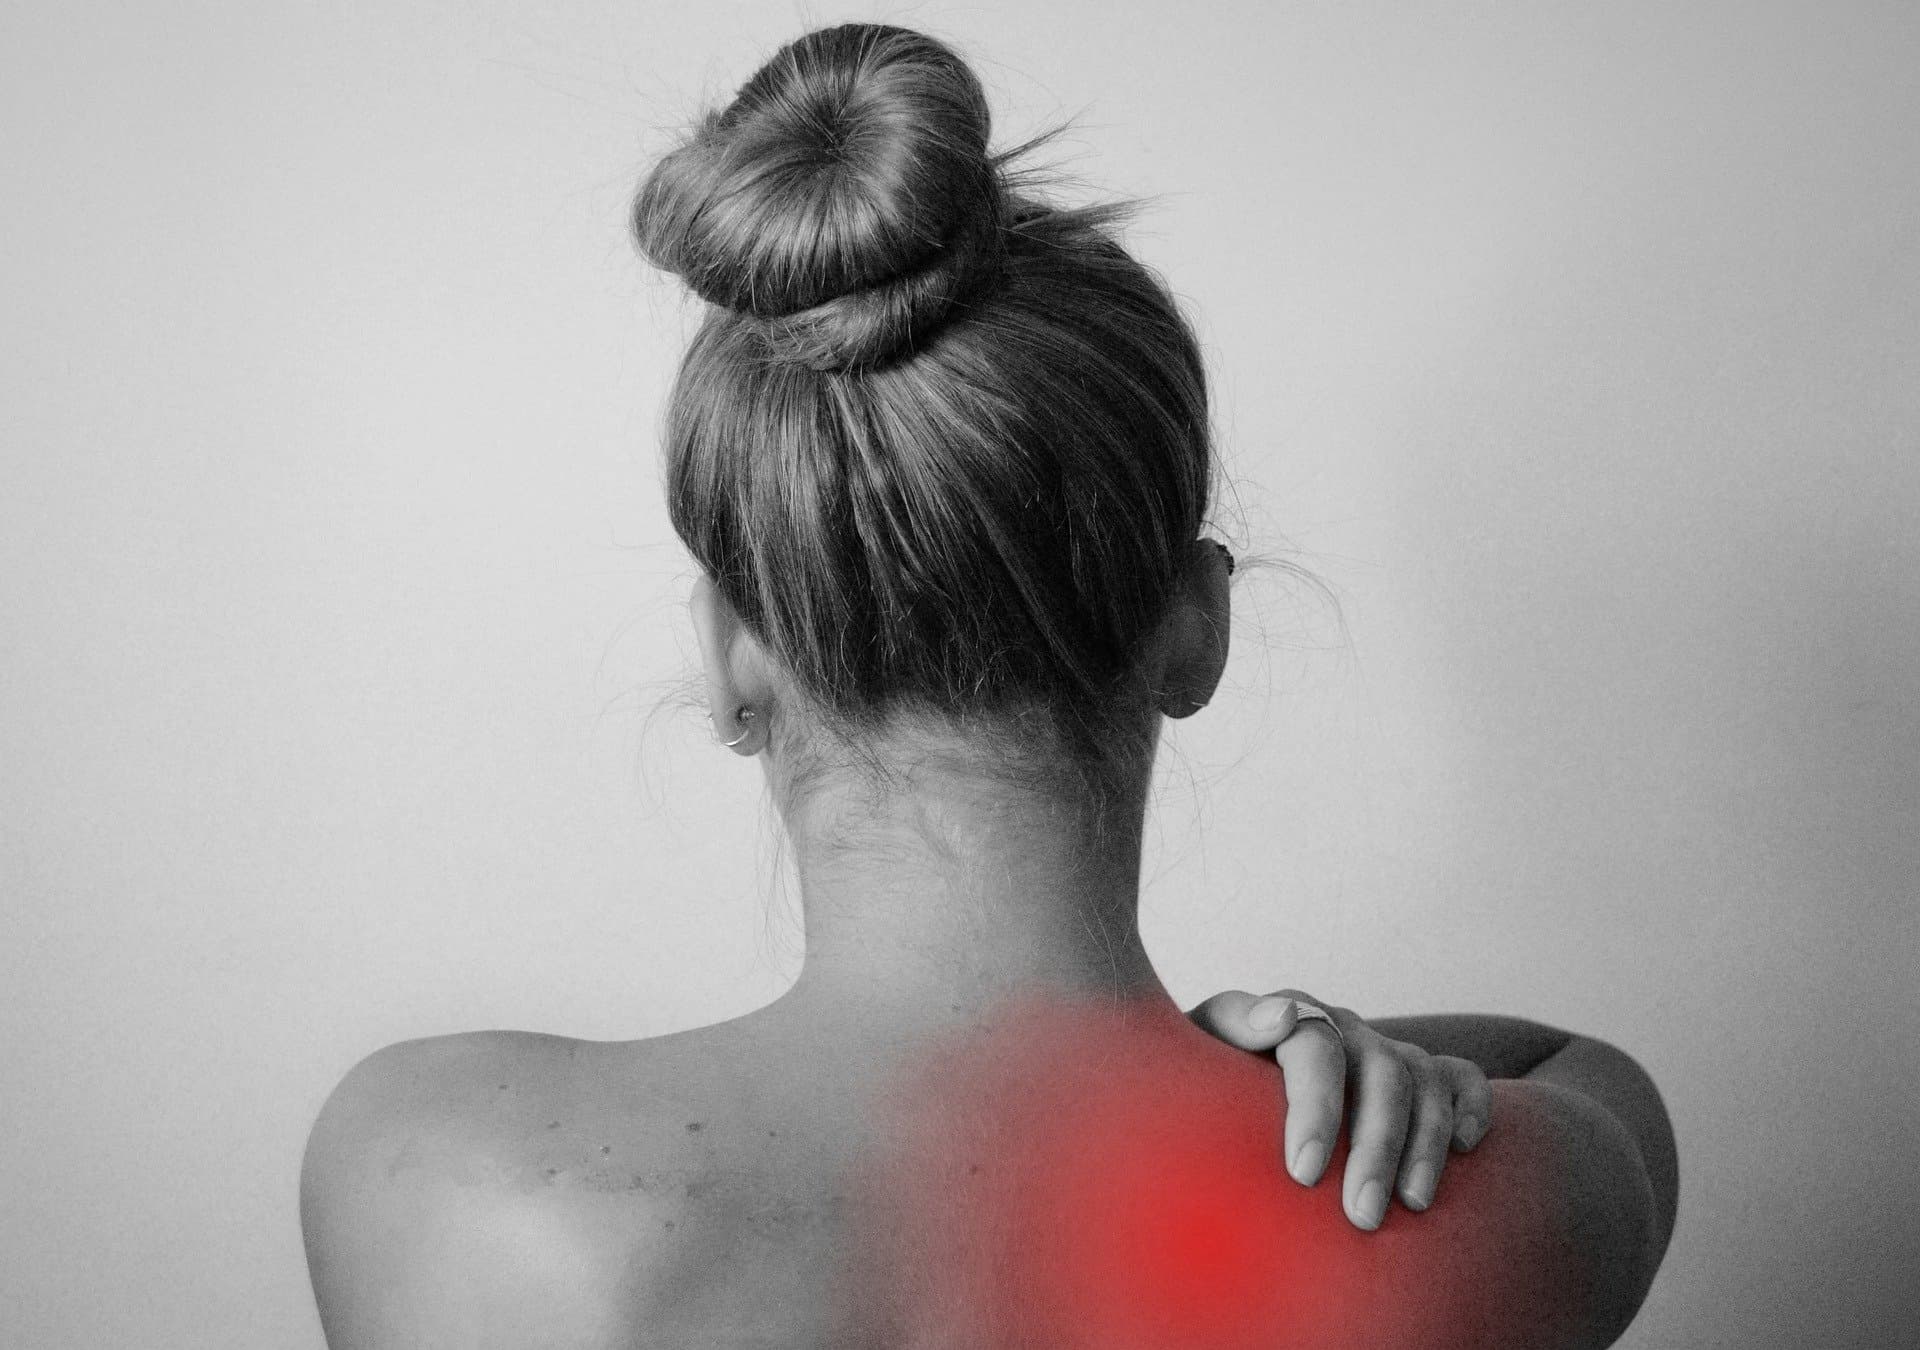 back-pain-shoulder